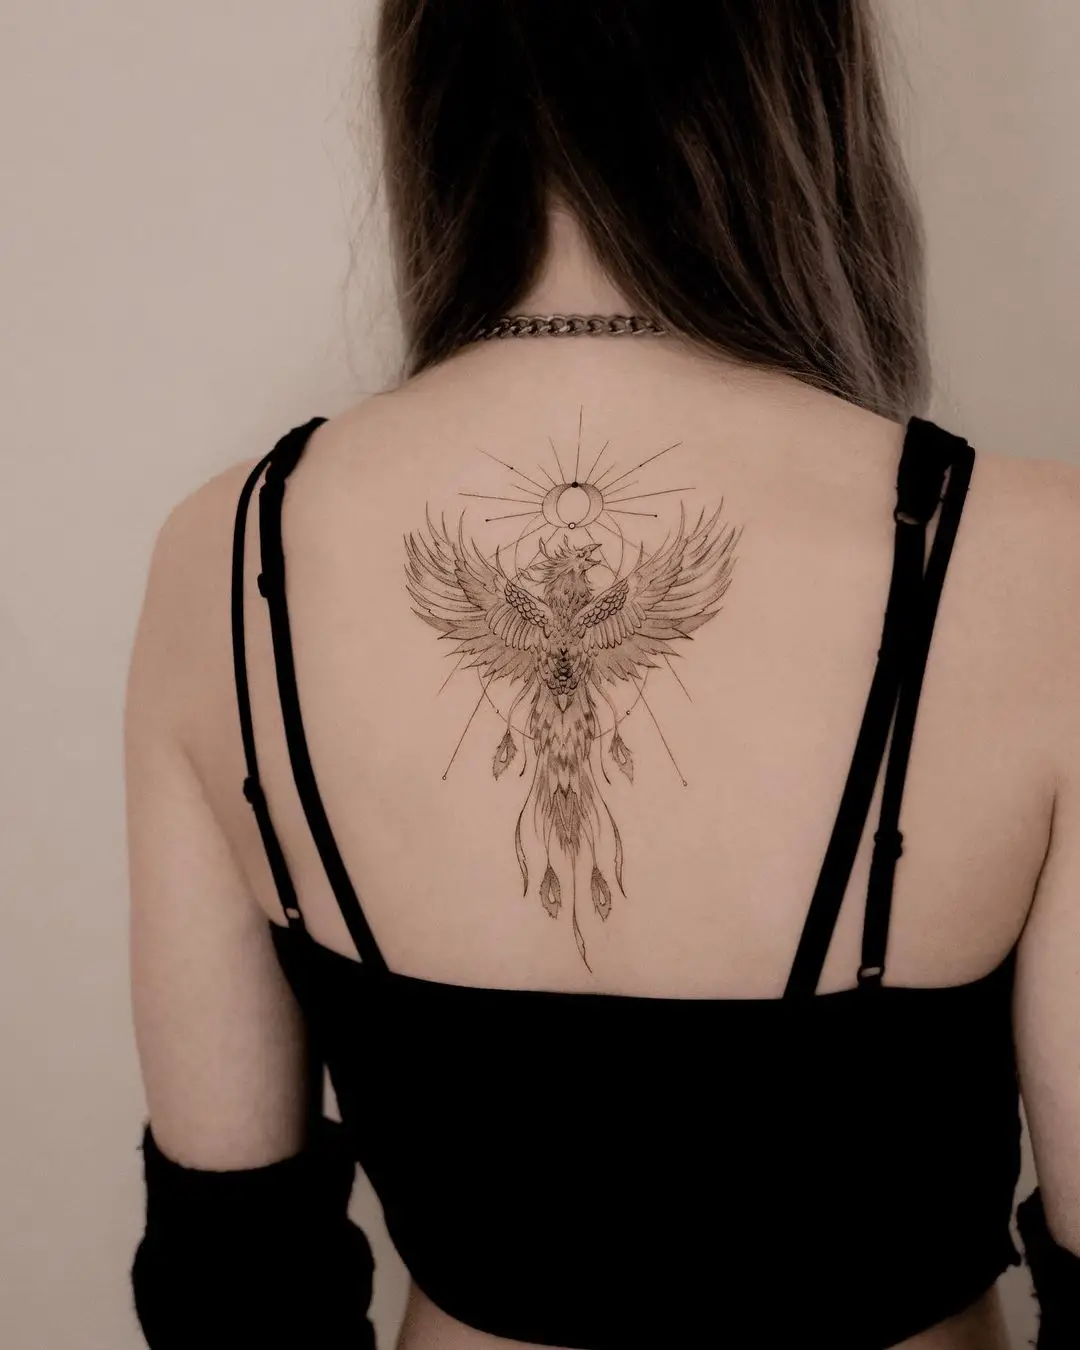 Phoenix tattoo for women by jk.tattoo